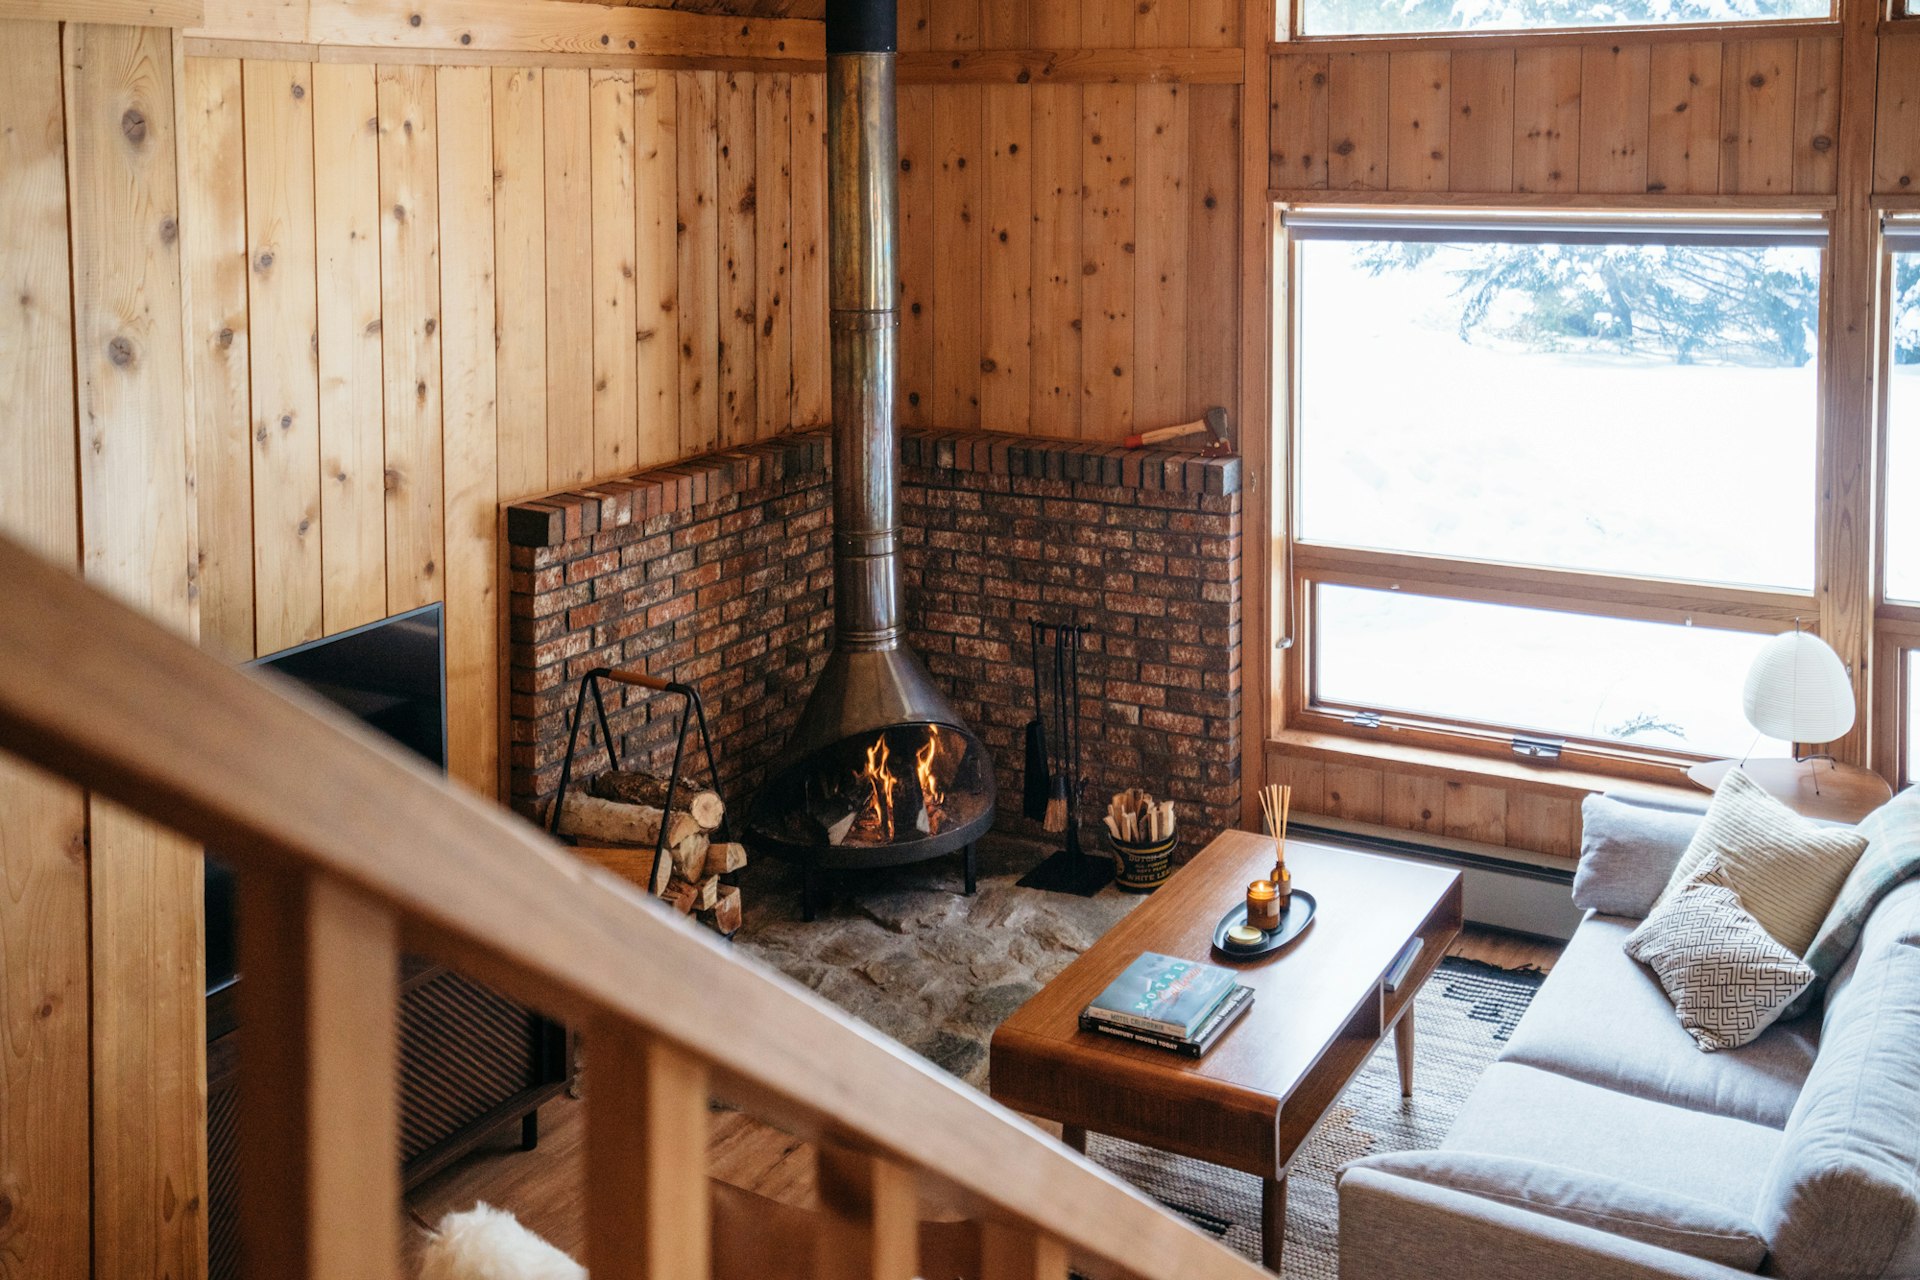 A Scandinavian-influenced living room in a modern Vermont cabin